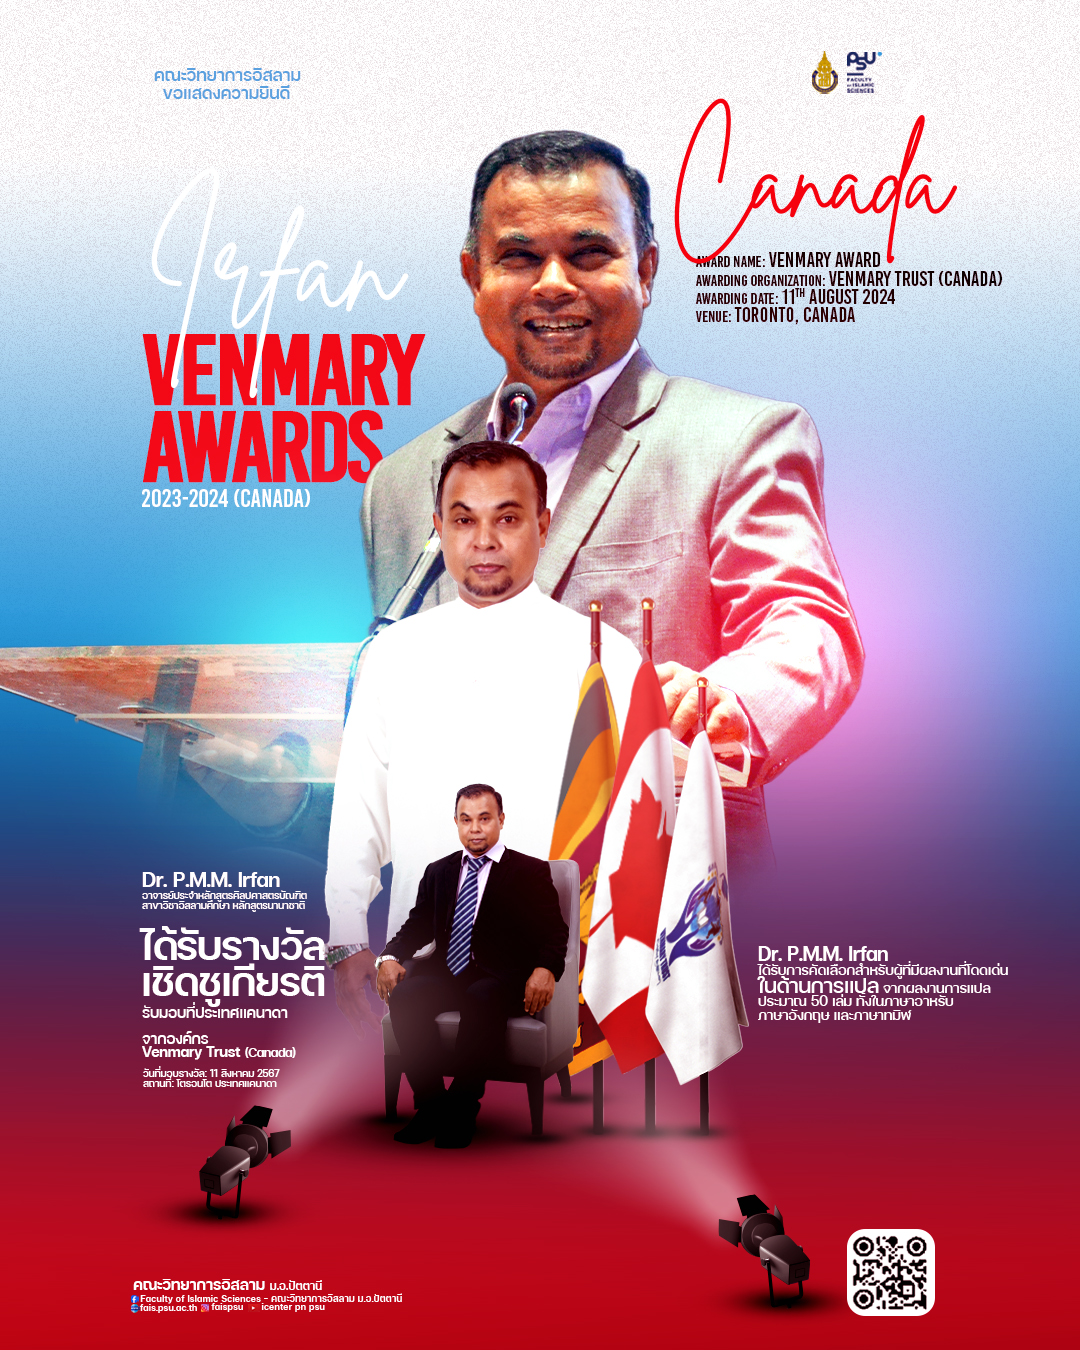 ขอแสดงความยินดี Dr. P.M.M. Irfan ได้รับรางวังเชิดชูเกียรติ Venmary Award จากองค์กร  Venmary Trust (ประเทศแคนาดา) ด้านผลงานการแปล ภาษาอาหรับ ภาษาอังกฤษ และภาษาทมิฬ